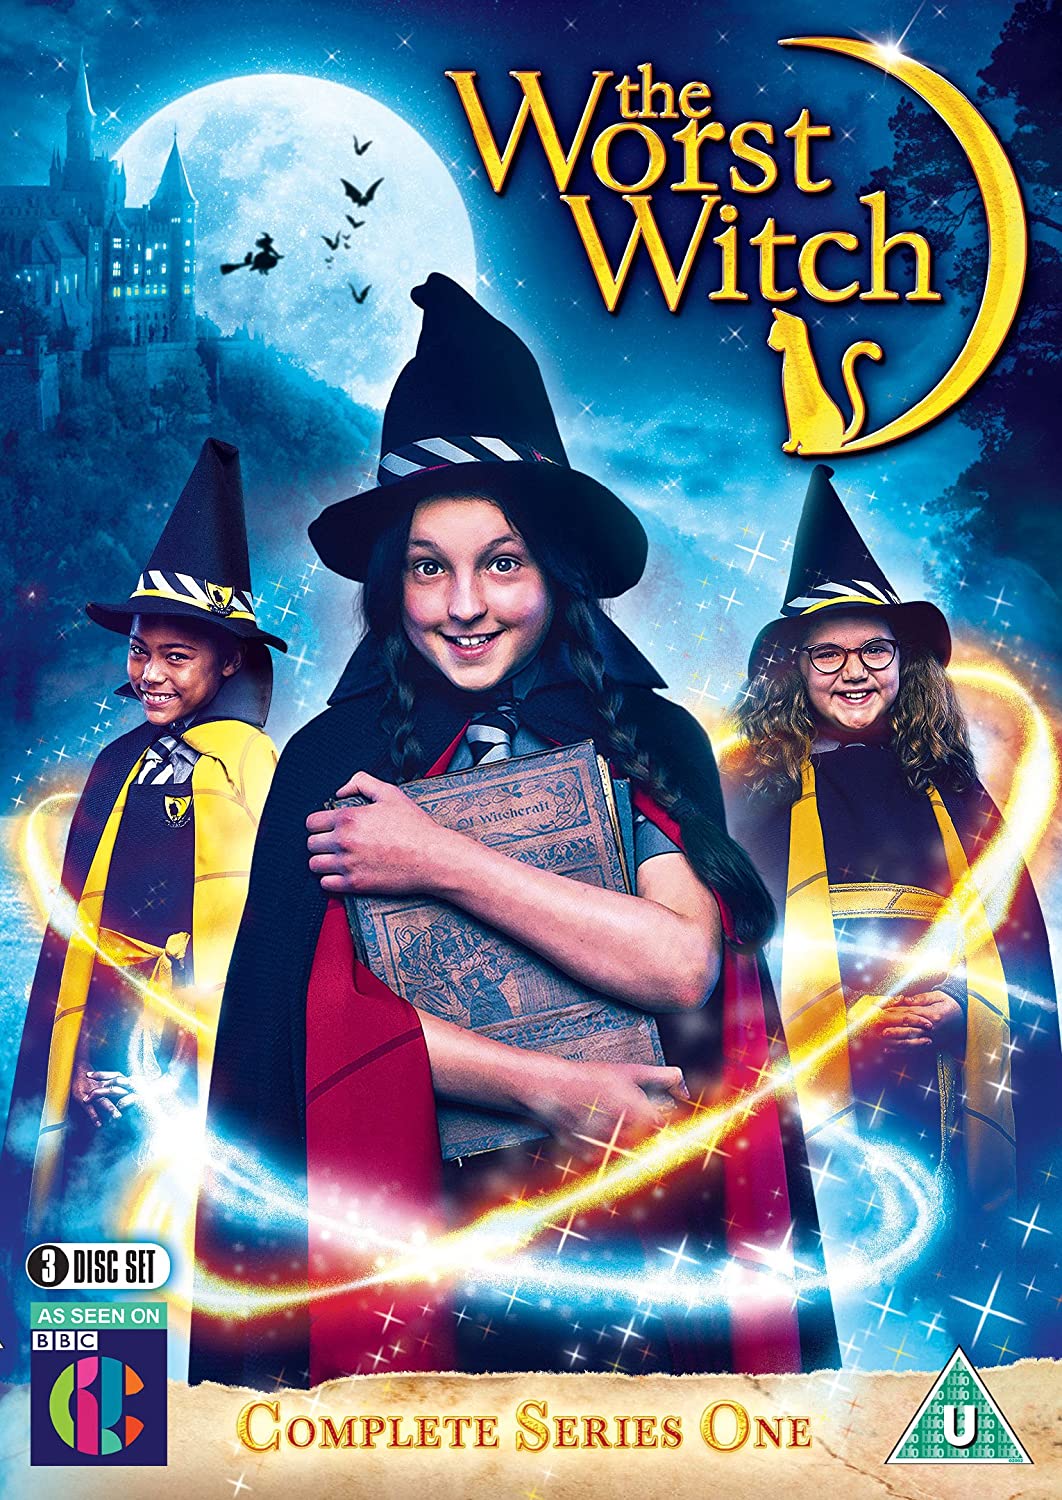 ดูหนังออนไลน์ฟรี The Worst Witch Season 3 (2019) โอมเพี้ยง! แม่มดน้อยสู้ตาย ซีซั่น 3 ตอนที่ 12